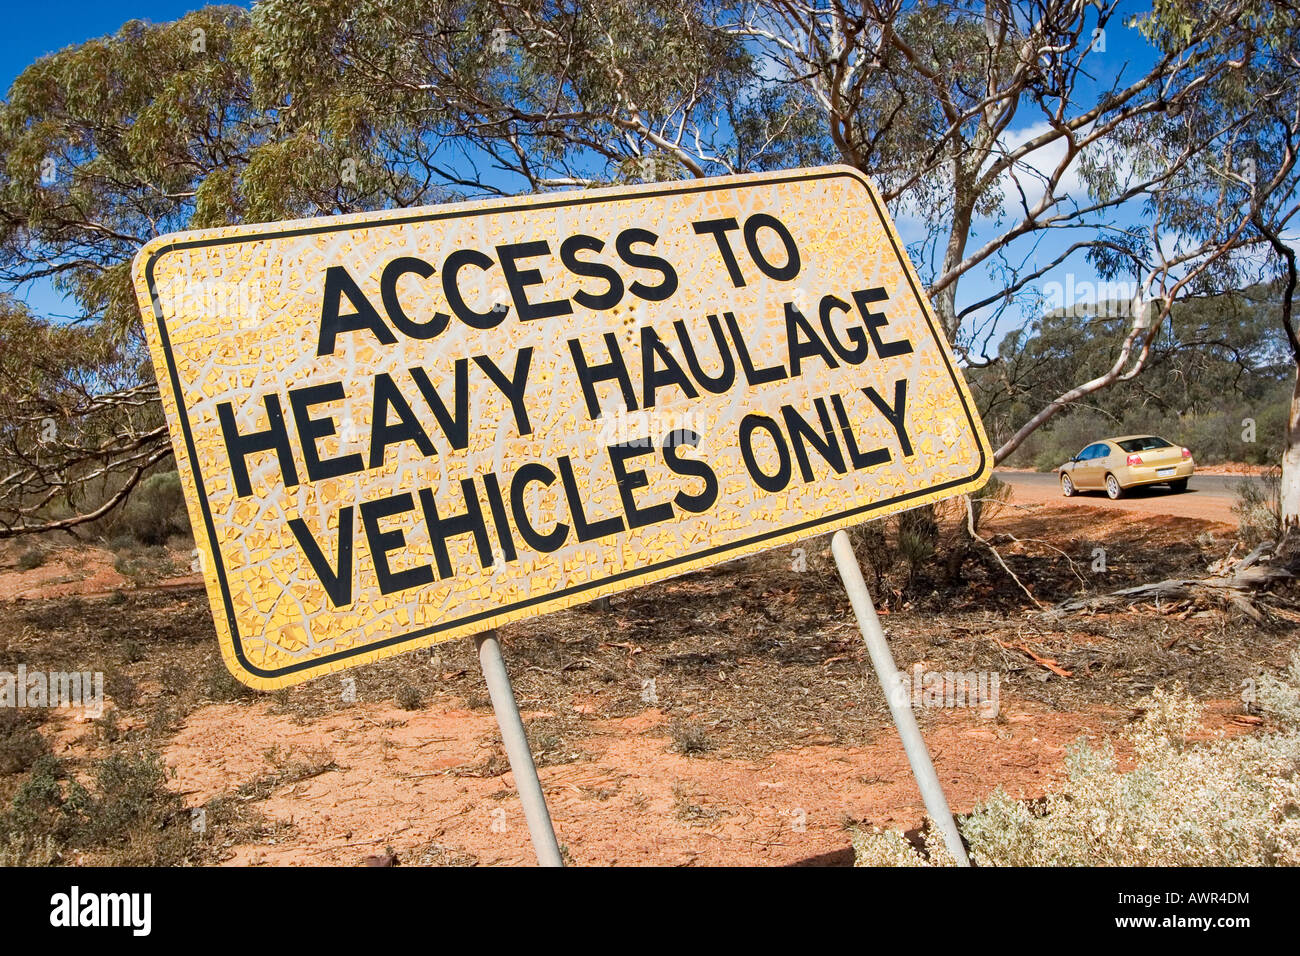 Signo (acceso a los vehículos de transporte pesado solamente), pintura pelando, Australia Occidental, WA, Australia Foto de stock